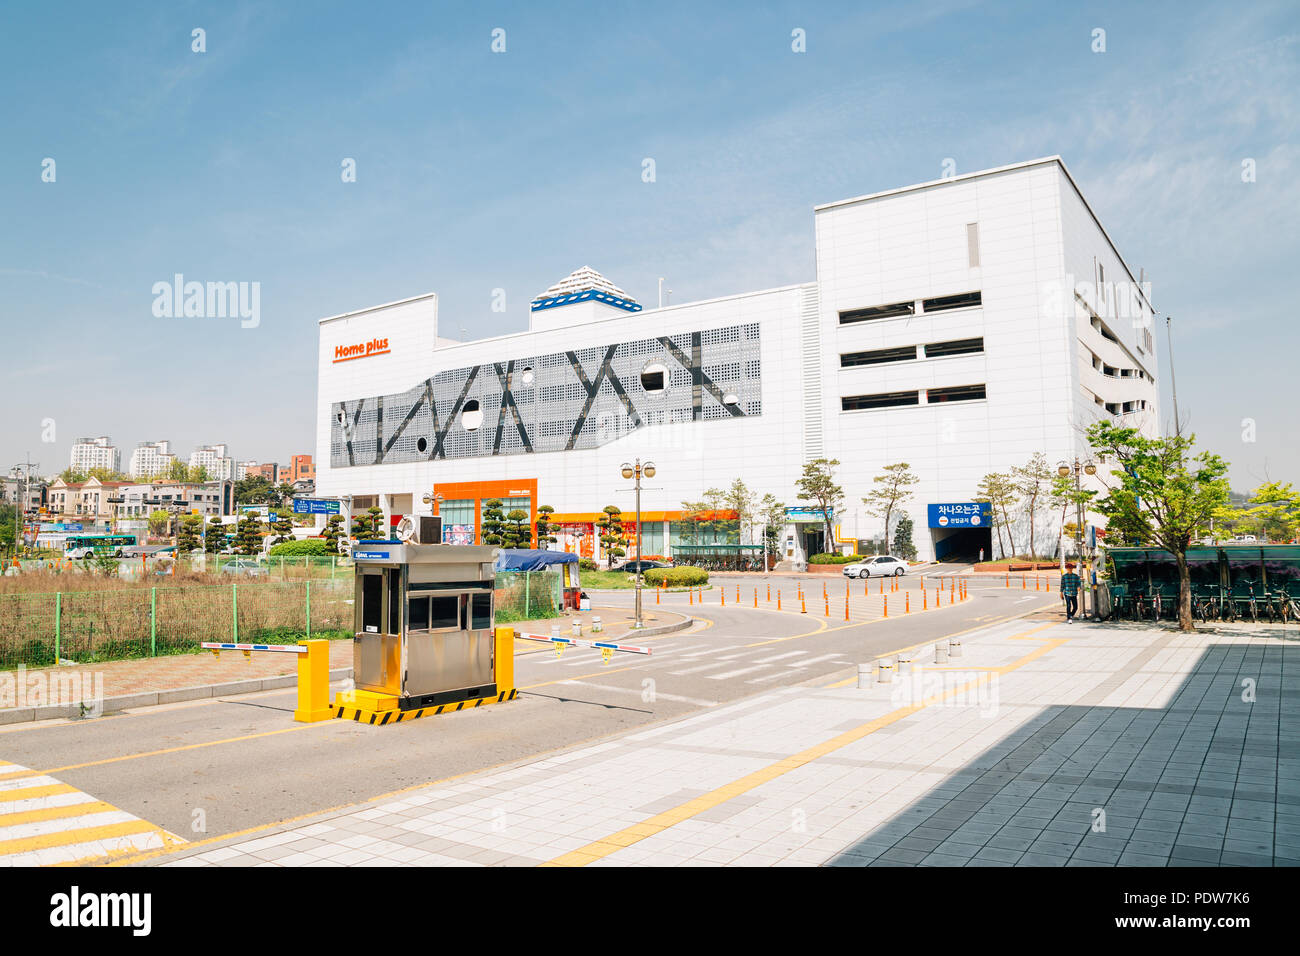 Osan, en Corée - le 26 avril 2016 : accueil, plus grand centre commercial célèbre Coréen Banque D'Images